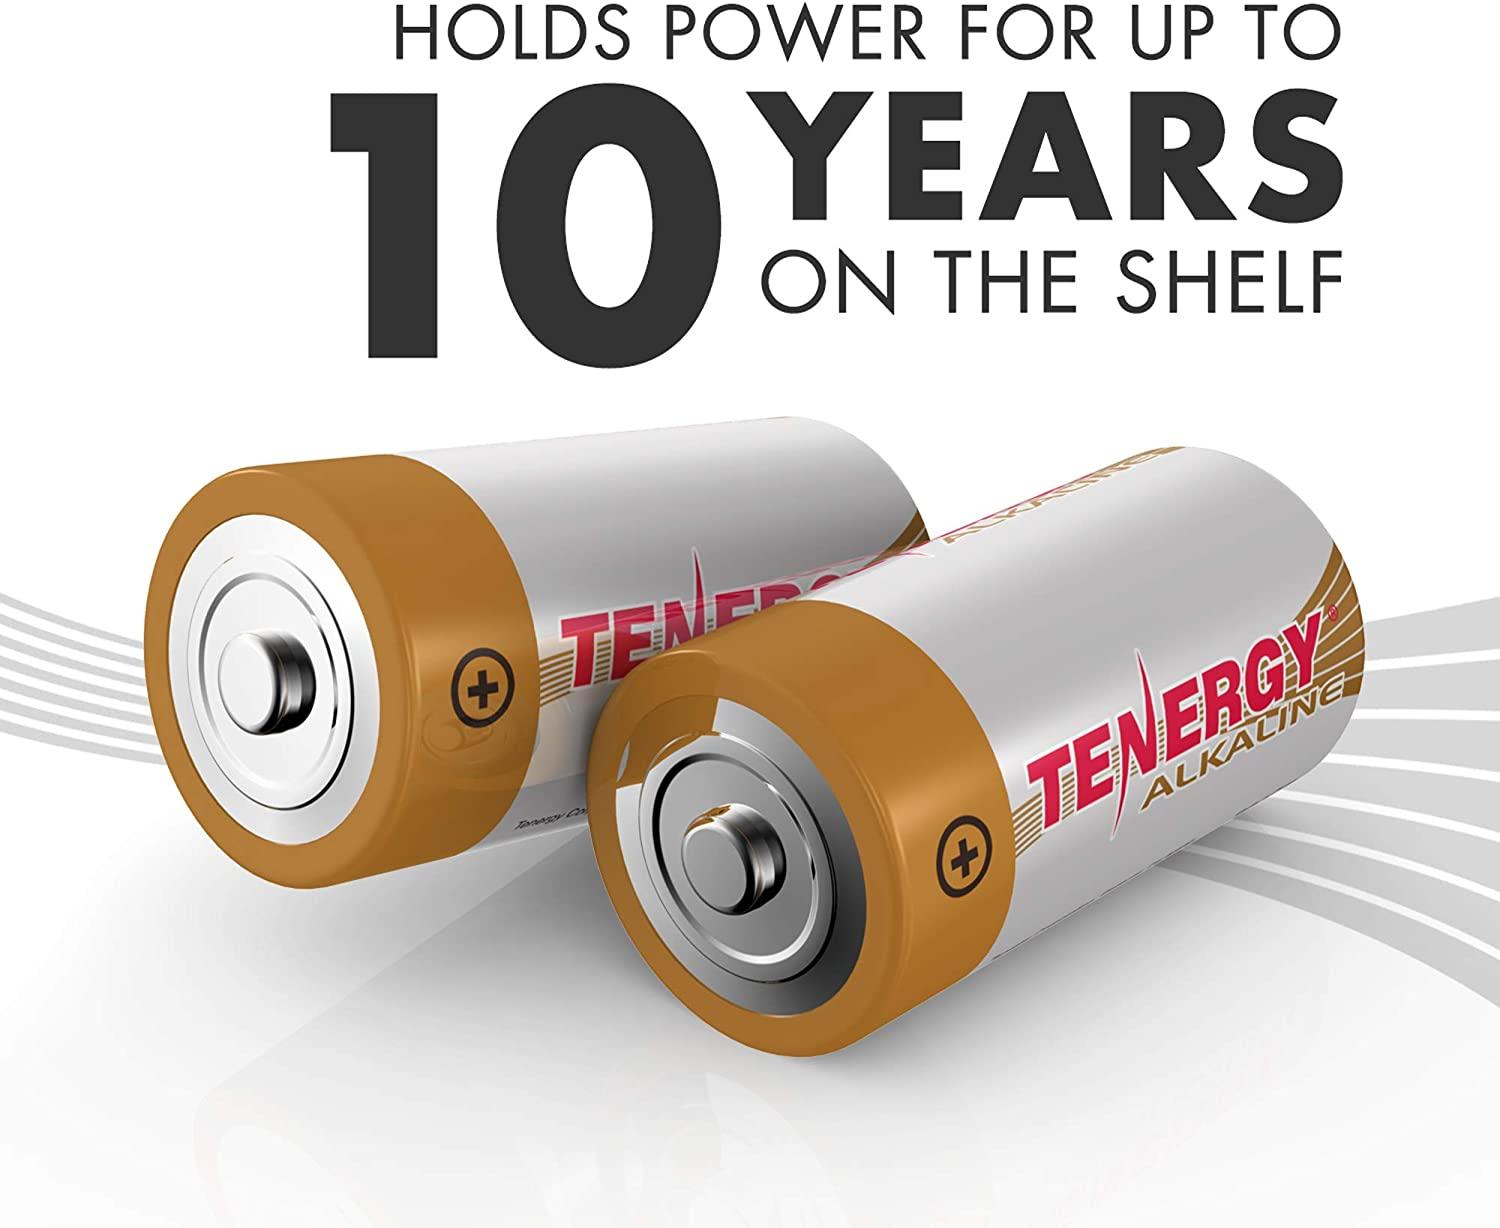 Box: 144pcs Tenergy C Size (LR14) Alkaline Batteries